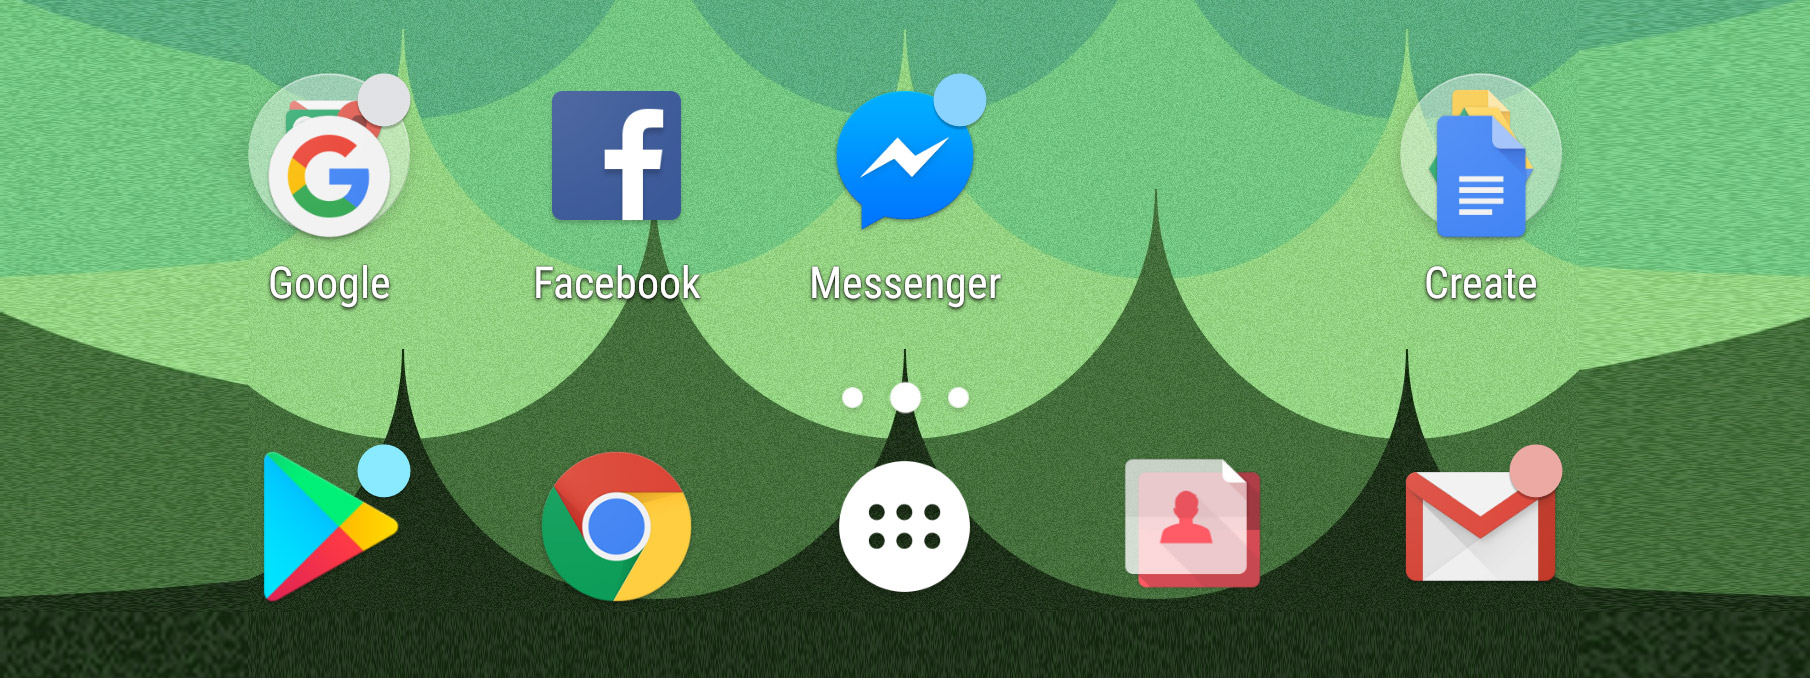 Nova Launcher có thêm thông báo dạng dấu chấm trên app icon giống Android O